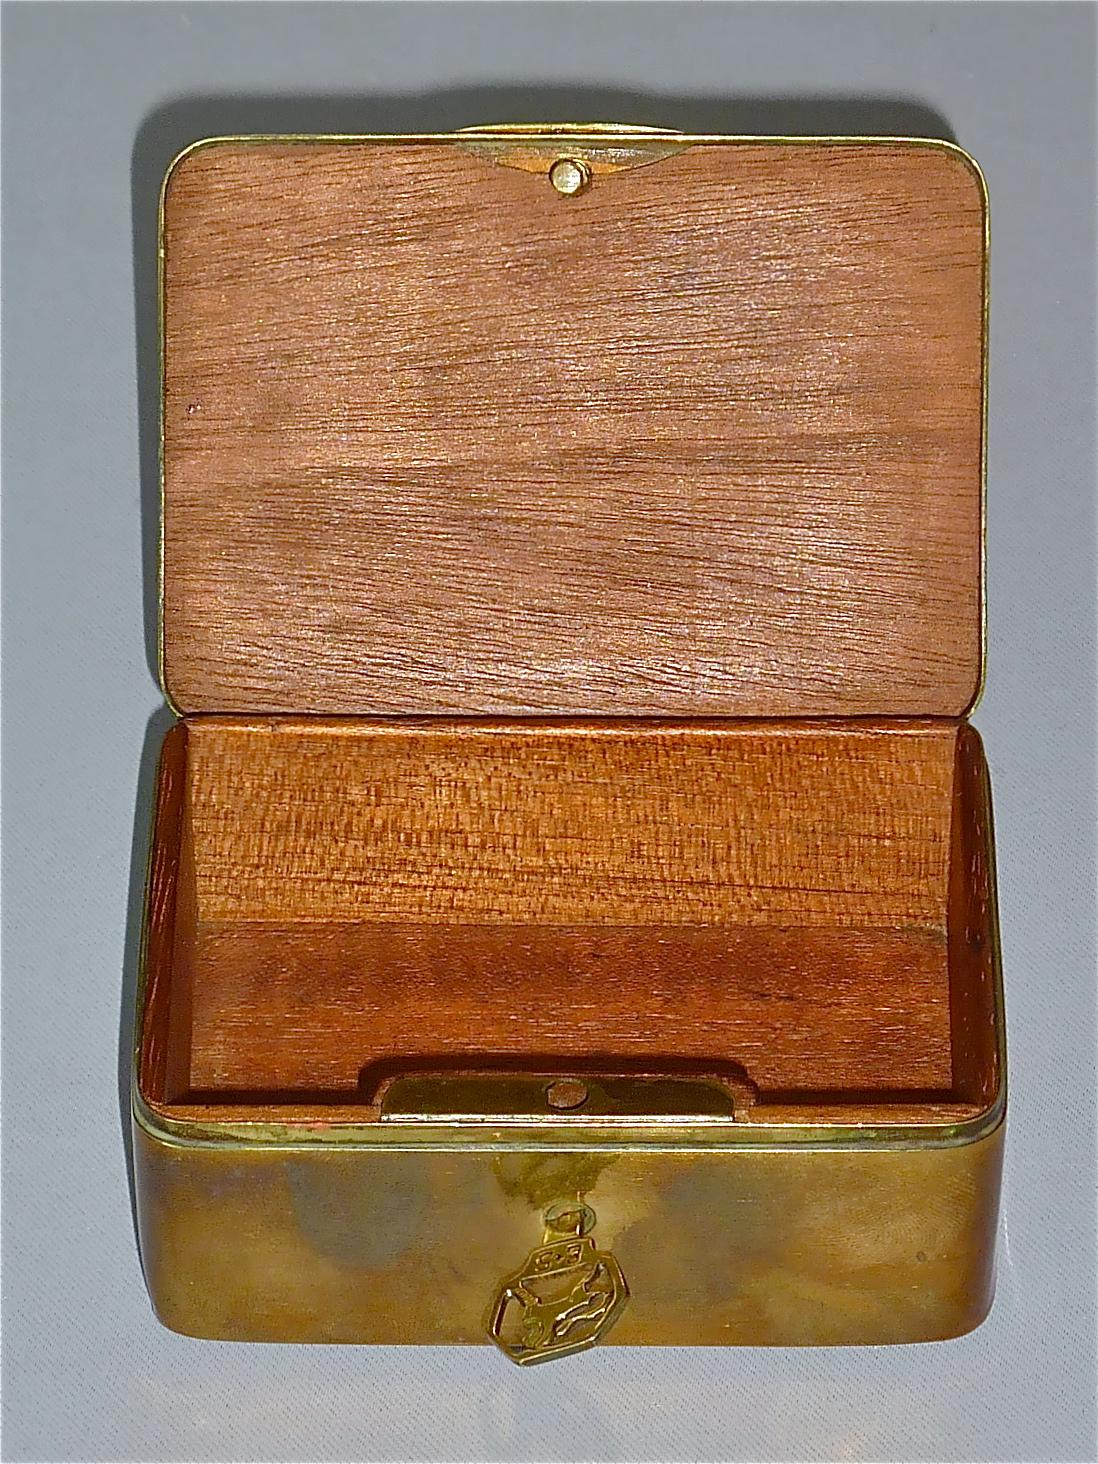 Pair Signed Erhard Sohne Trinket Casket Box Casket Original Keys Brass Wood 1900 For Sale 2